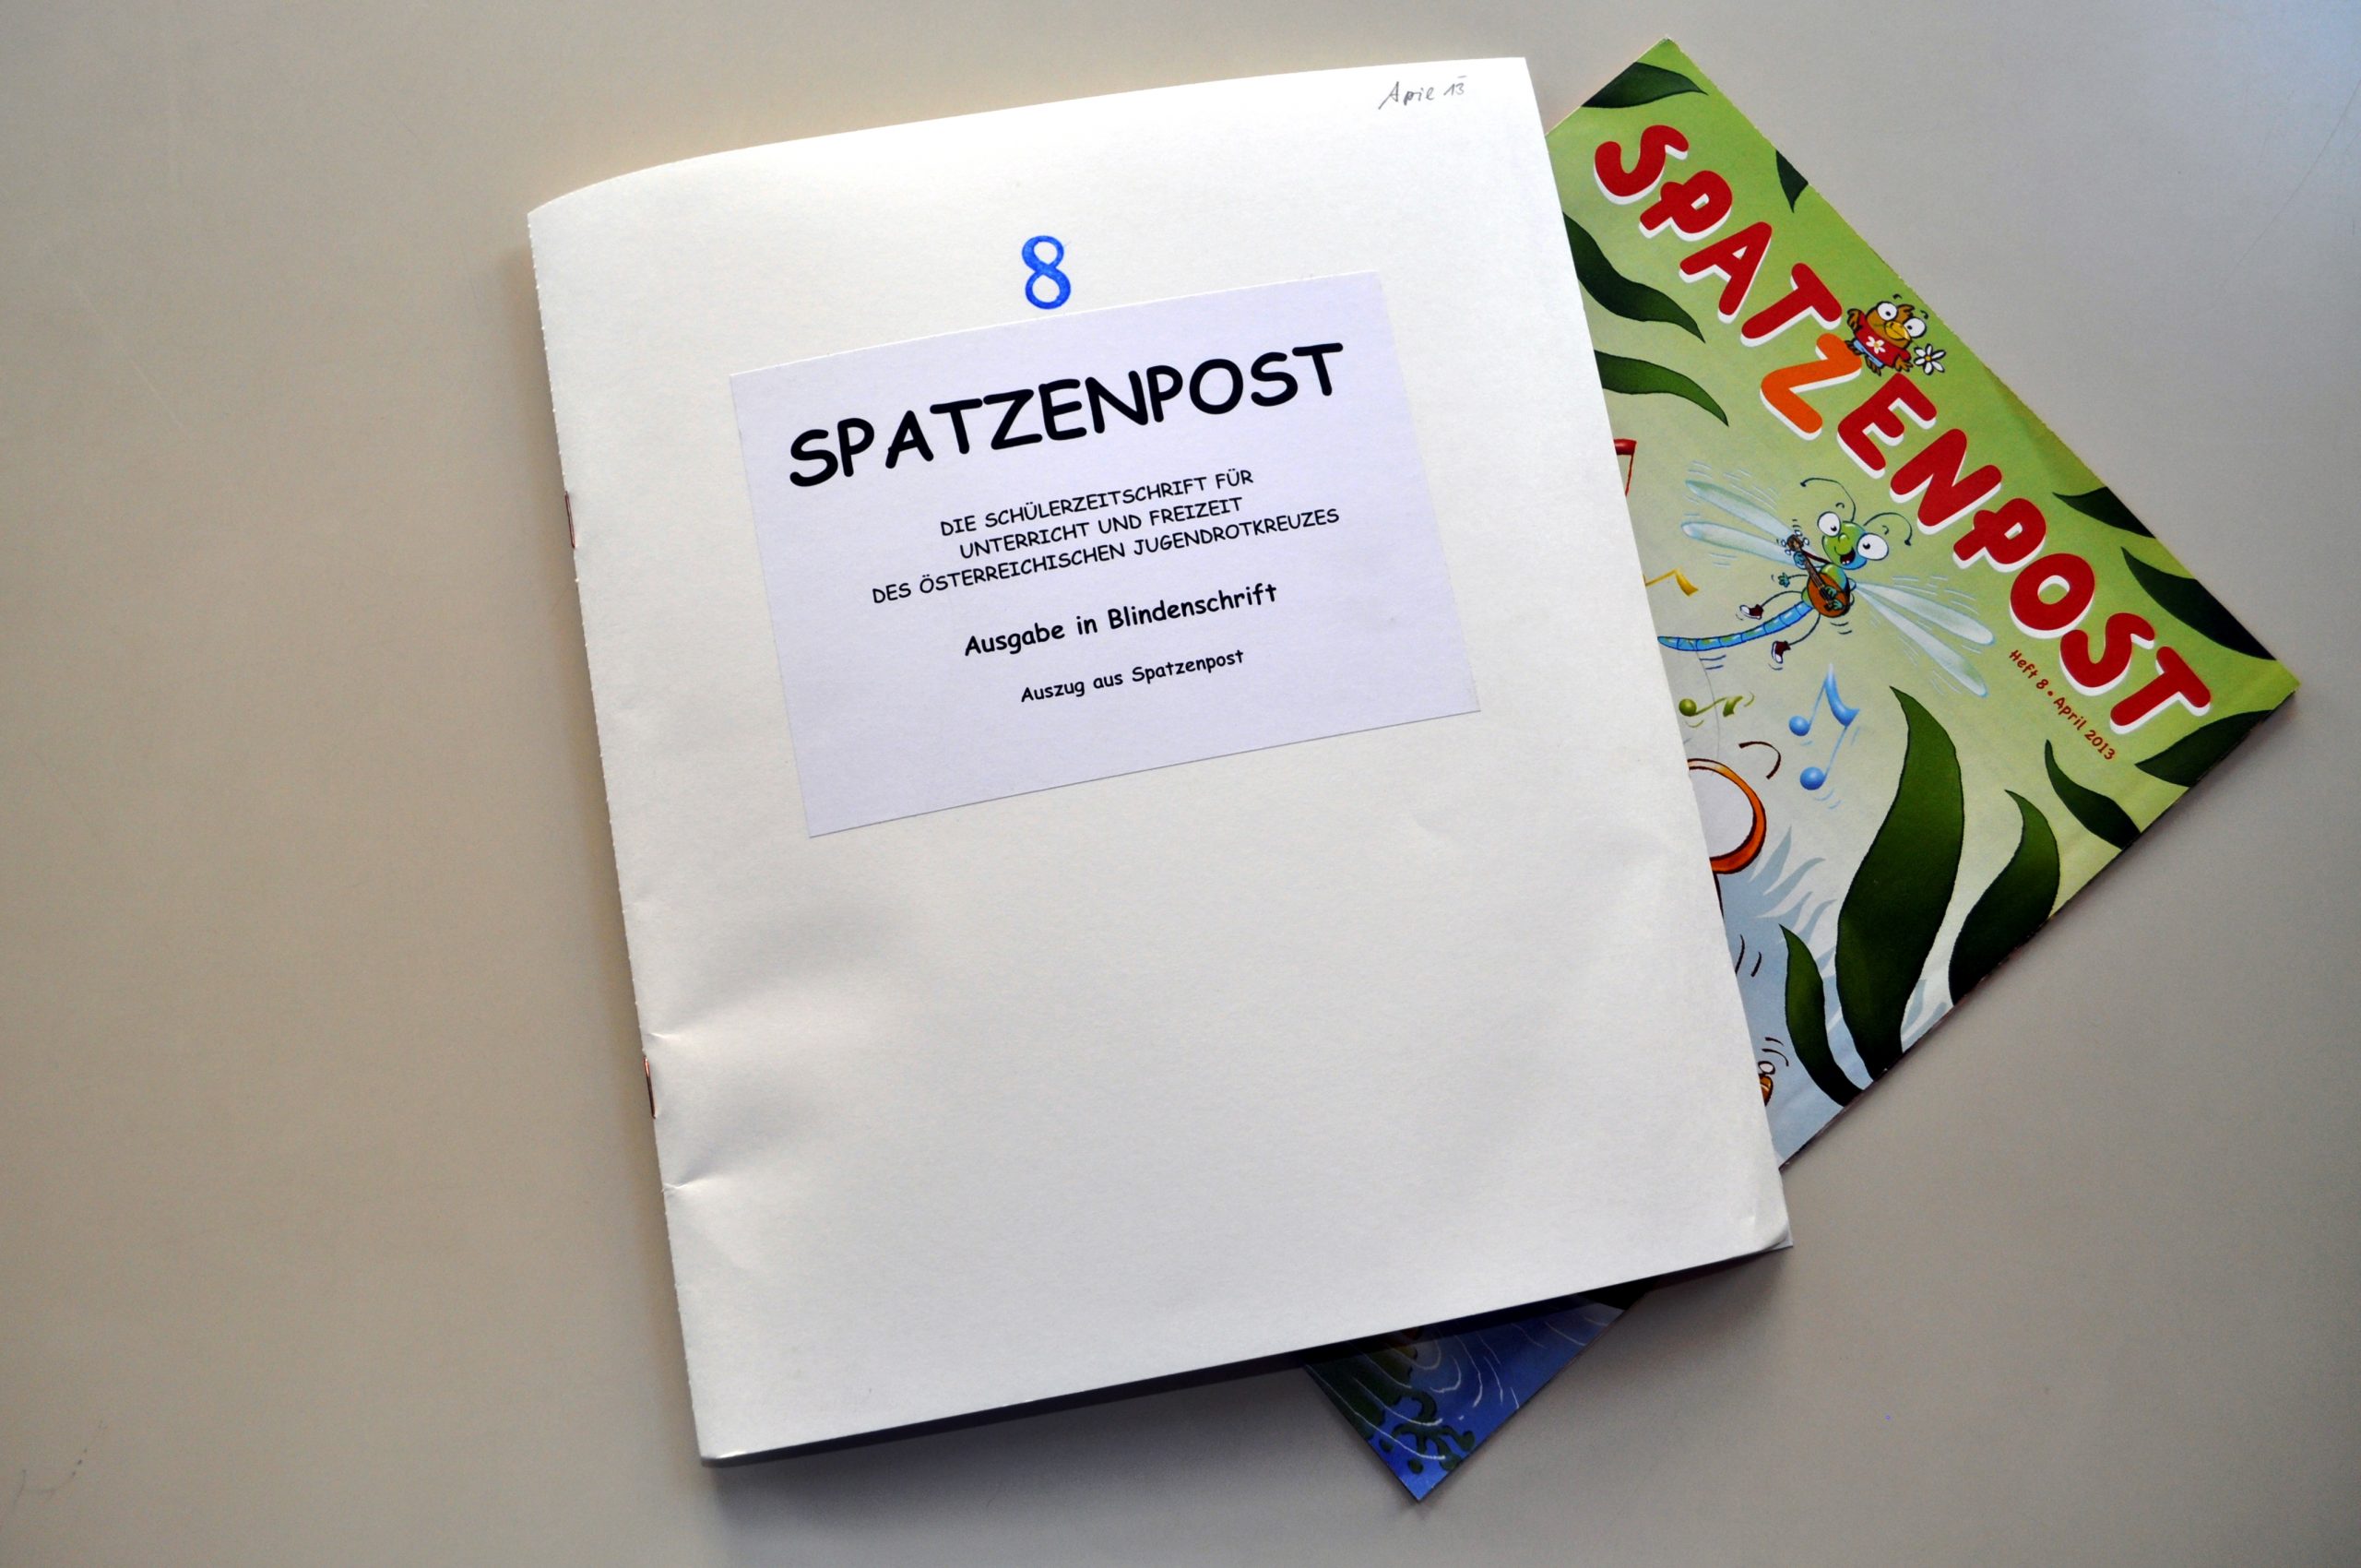 Schülerzeitschrift "Spatzenpost" und Ausgabe in Blindenschrift